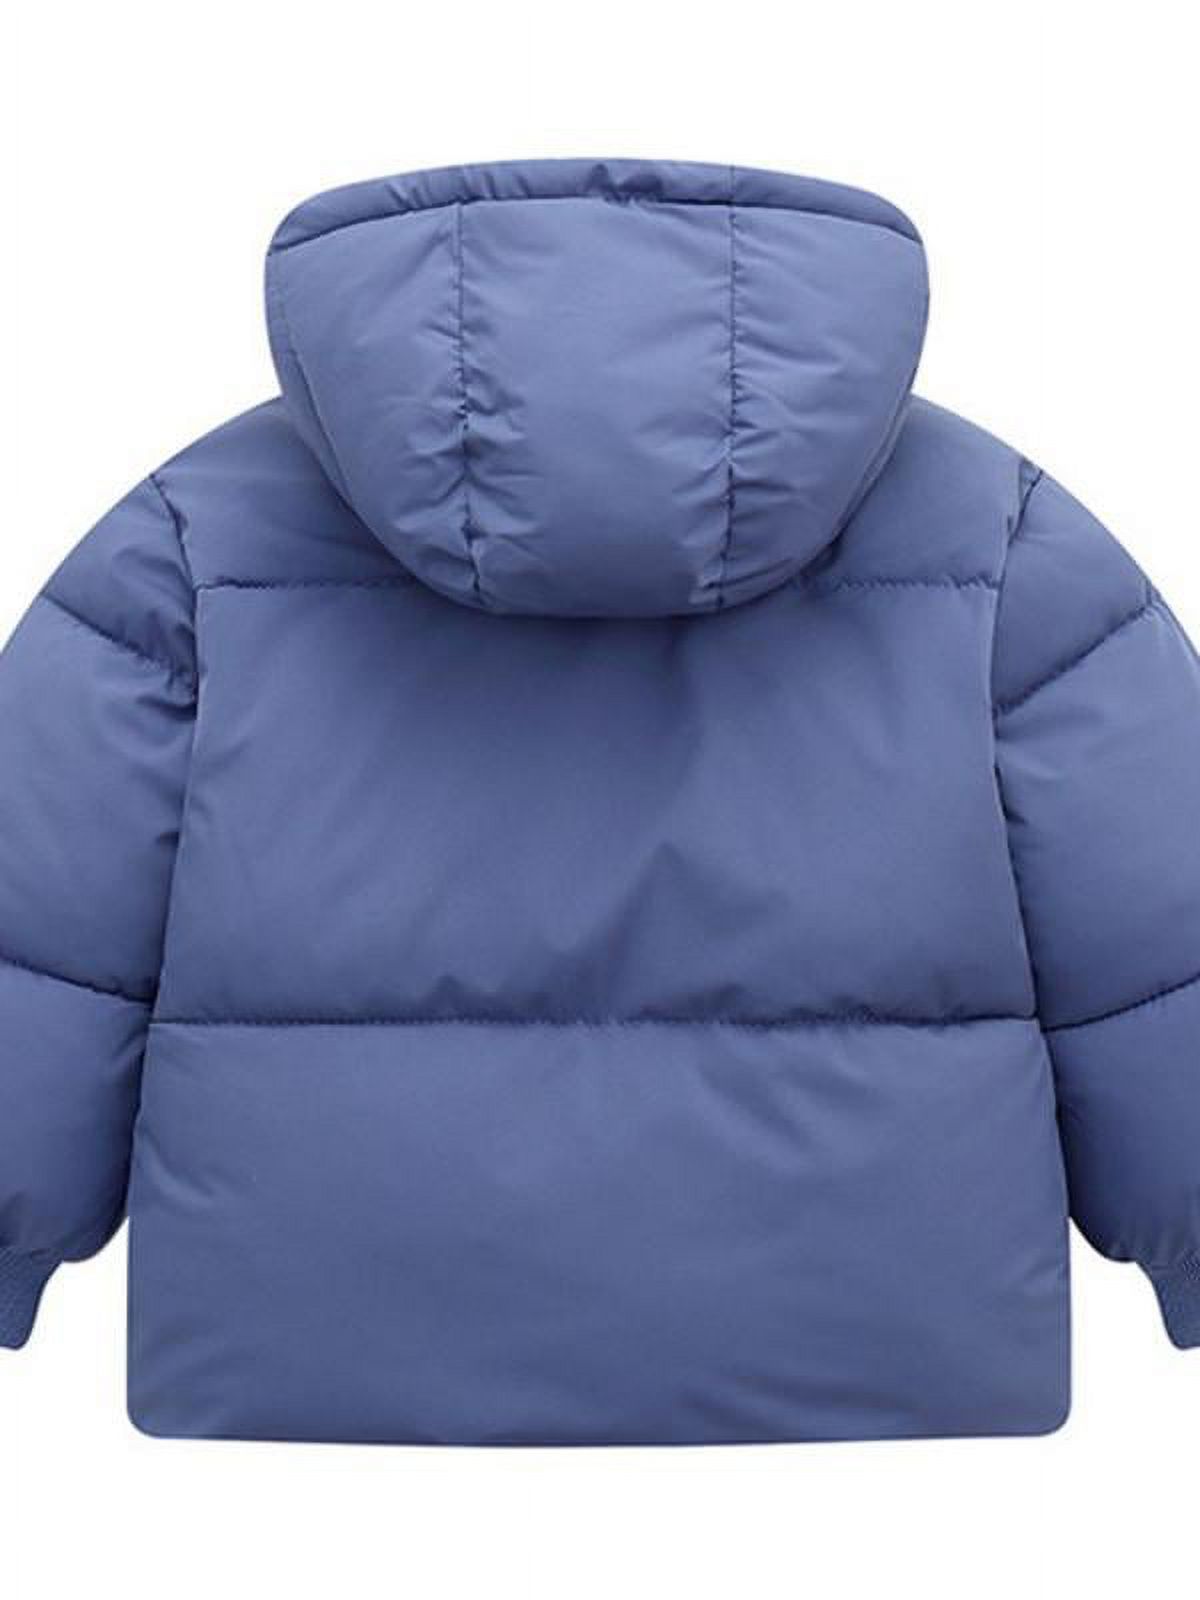 Topumt Boys Girls Hooded Down Jacket Winter Warm Fleece Coat Windproof Zipper Puffer Outerwear 1-6T - image 2 of 3